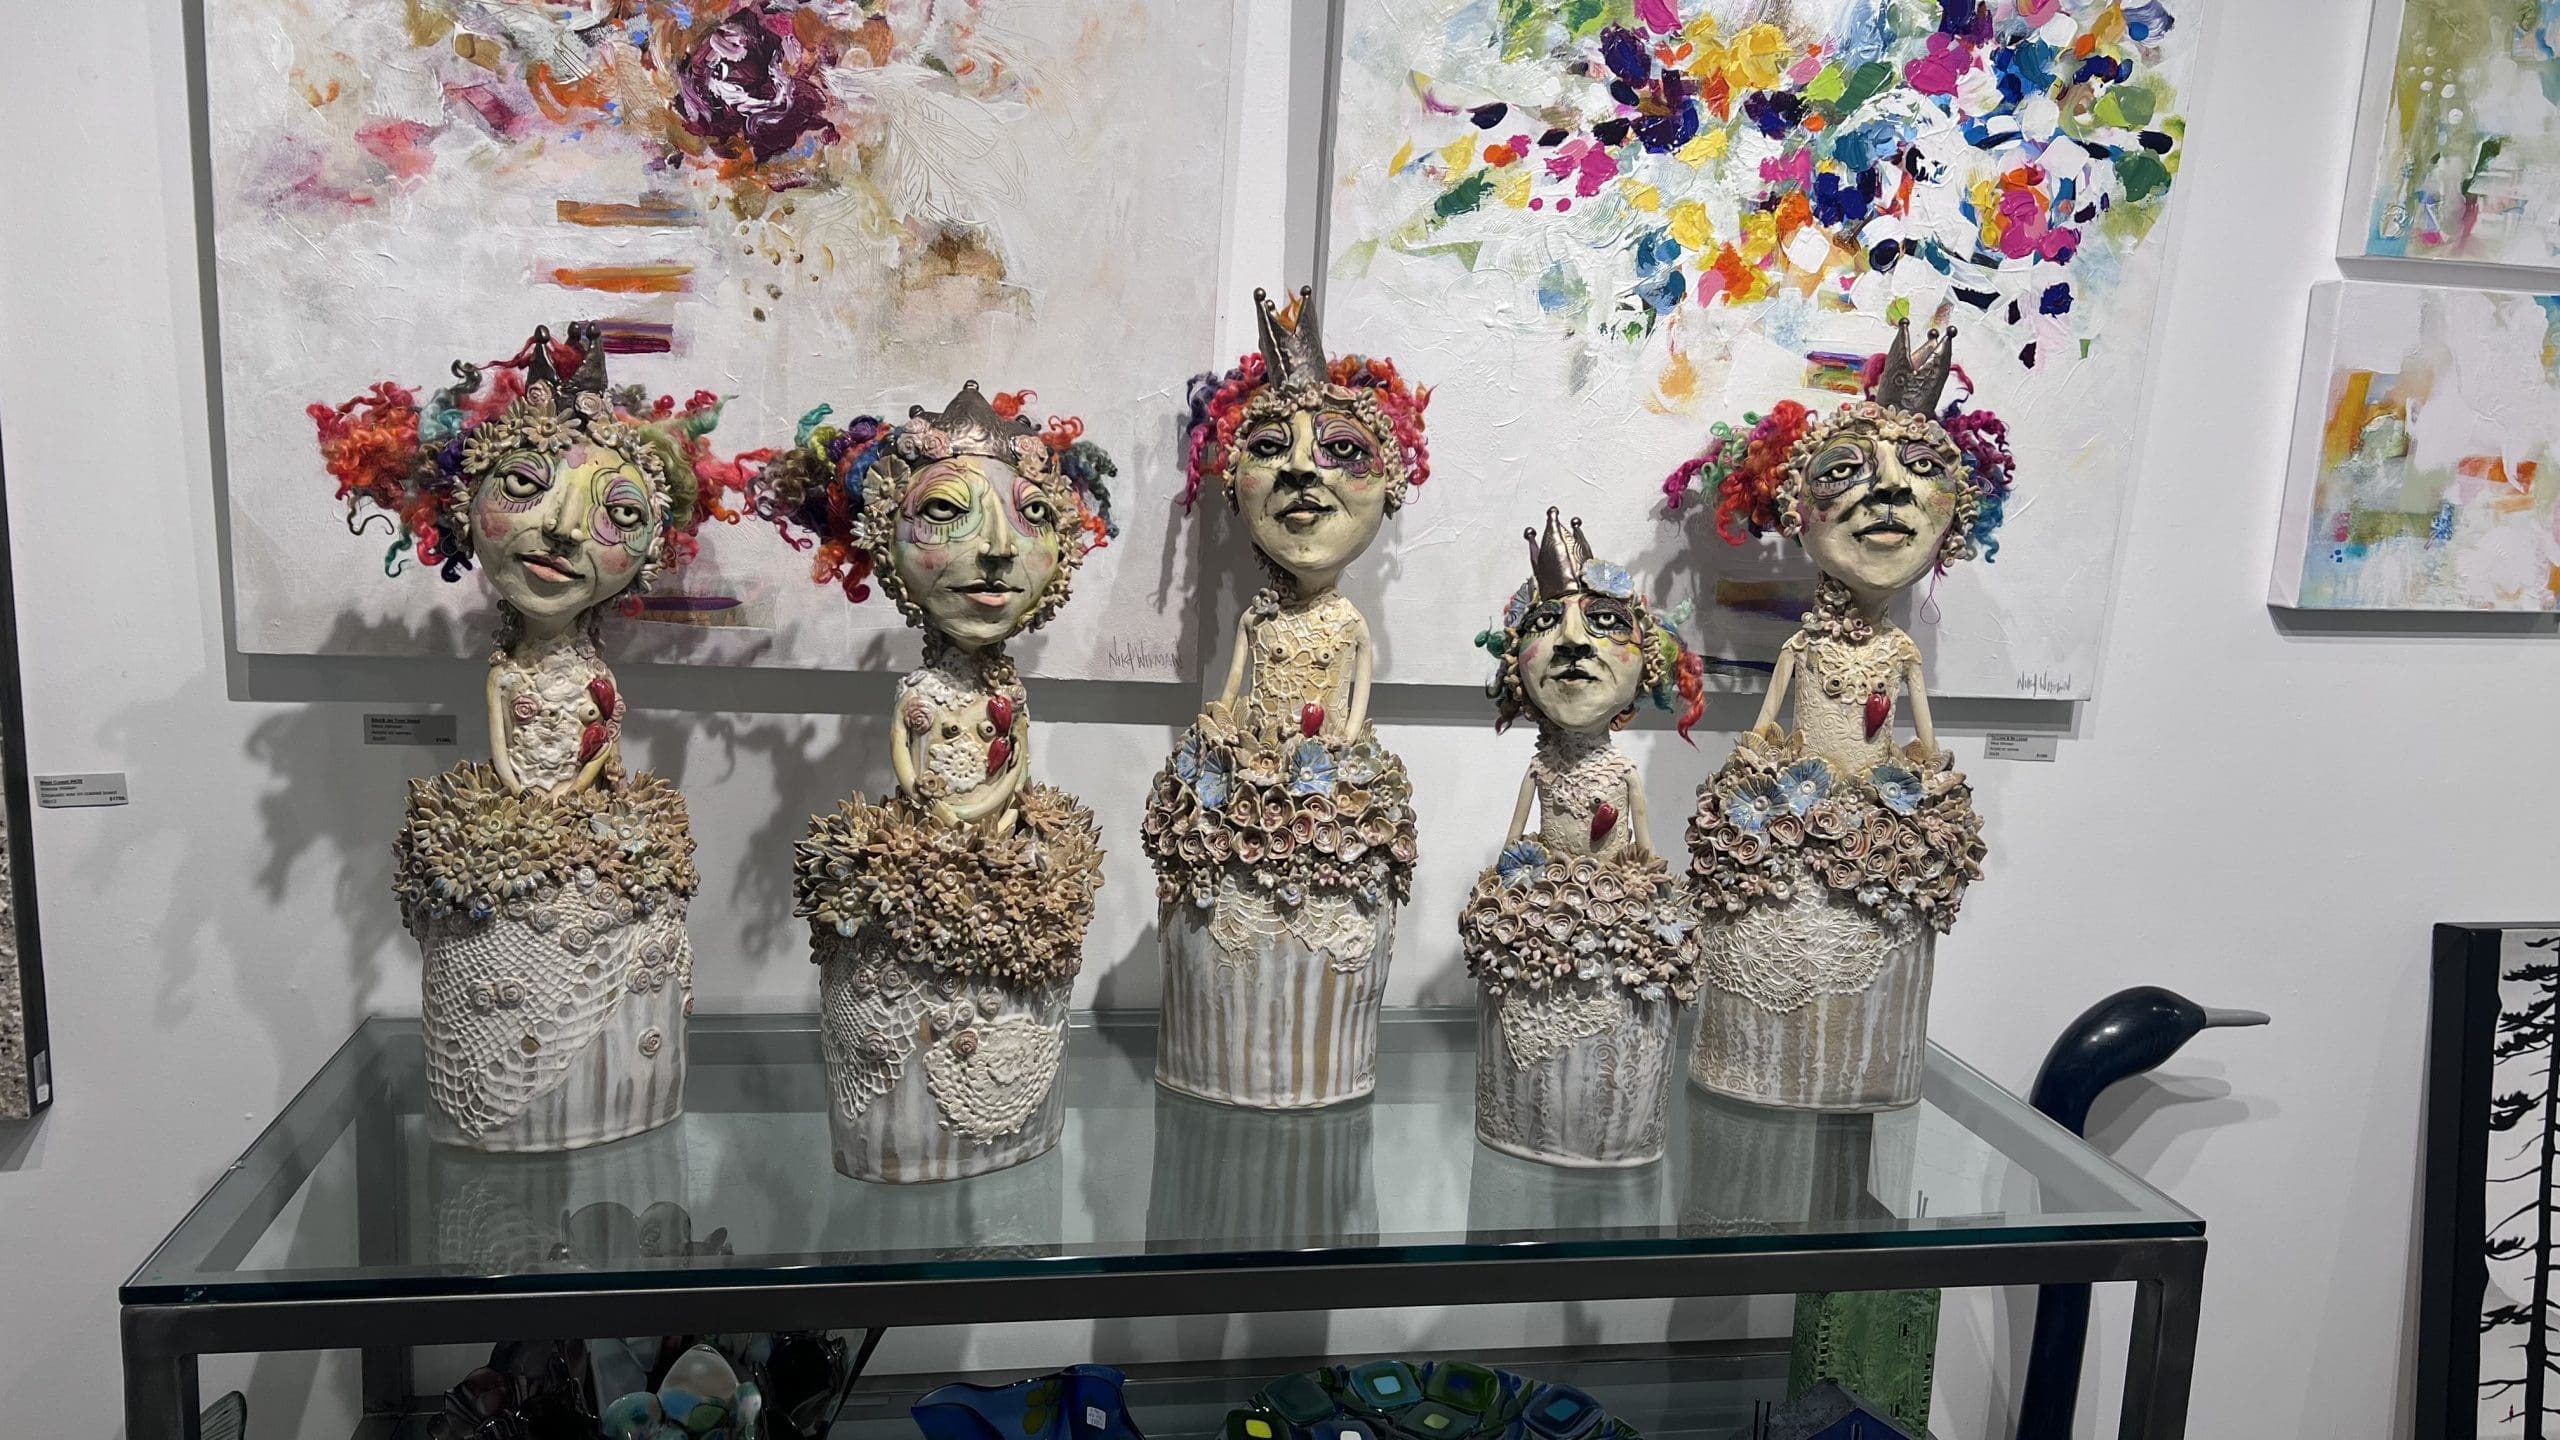 Andrea Revoy - Fabulous Ceramic Objects